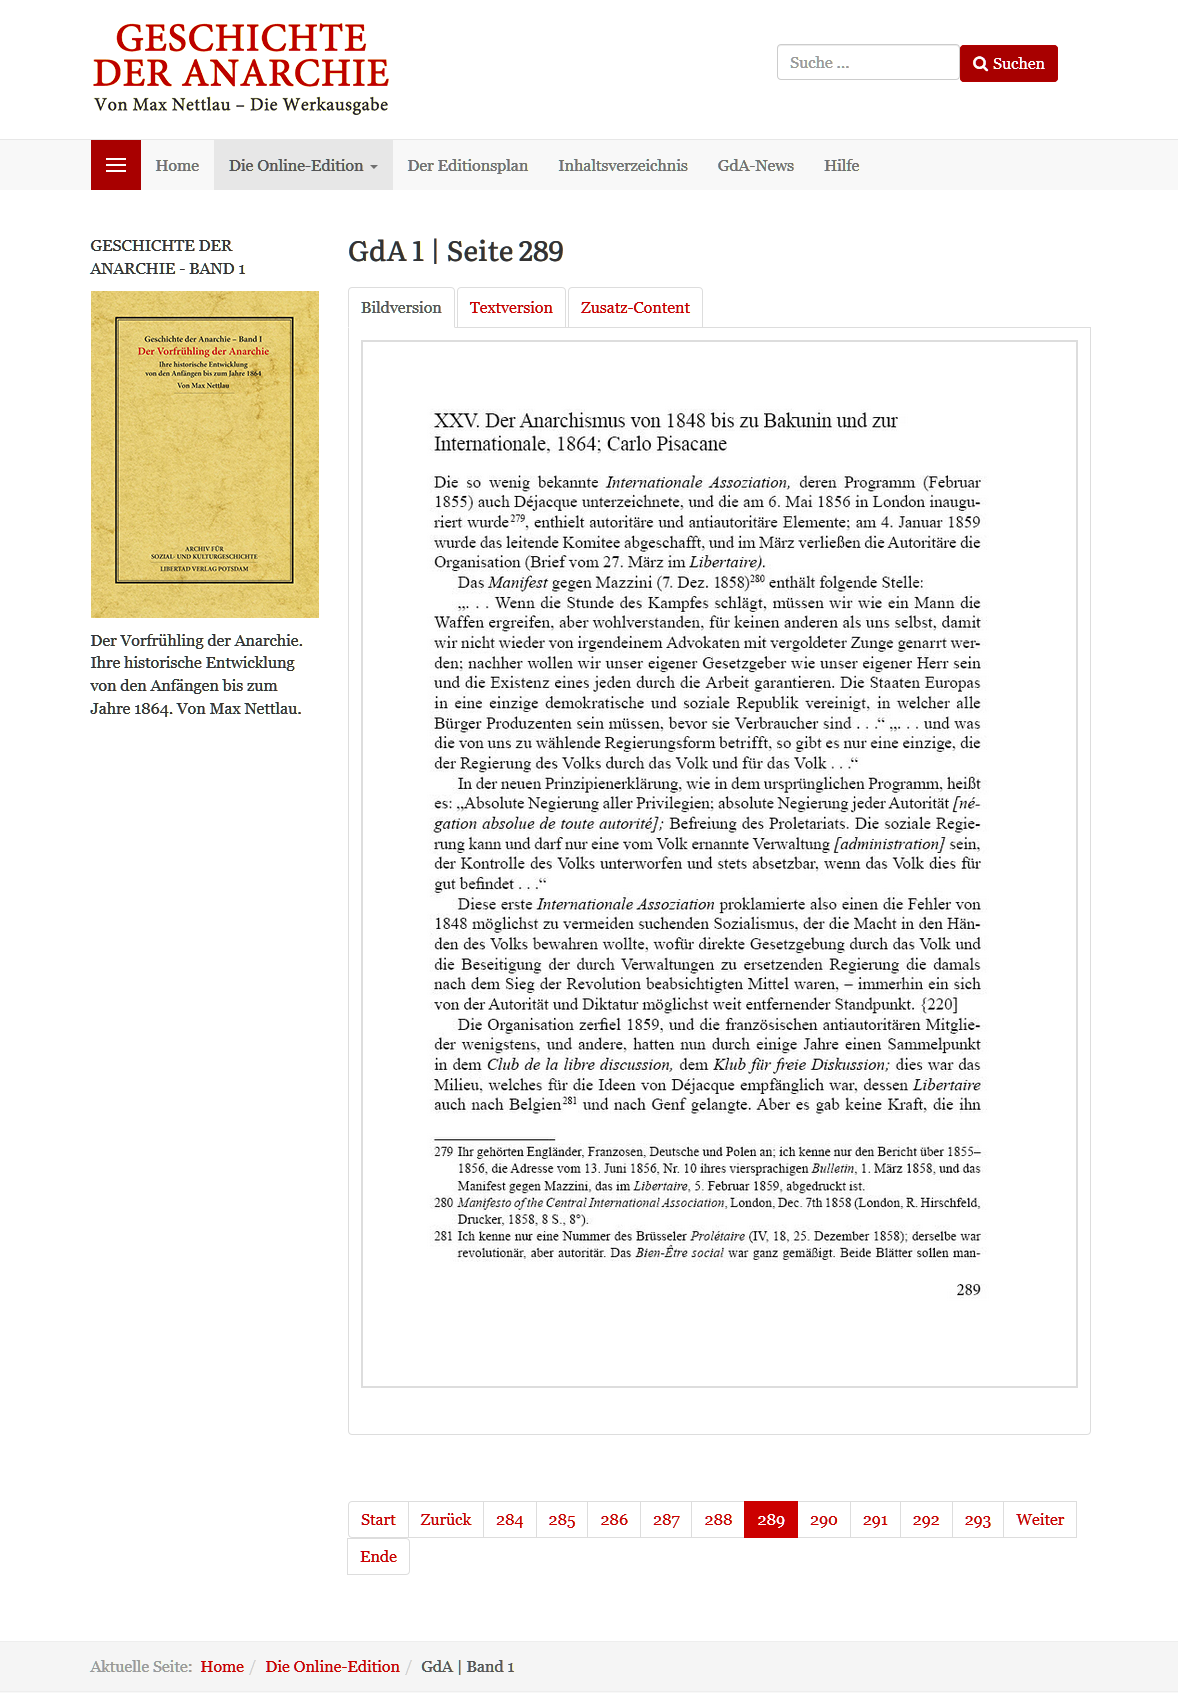 Beispielseite der Onlineausgabe der "Geschichte der Anarchie" von Max Nettlau (Großdarstellung des Screenshots per Mausklick!)